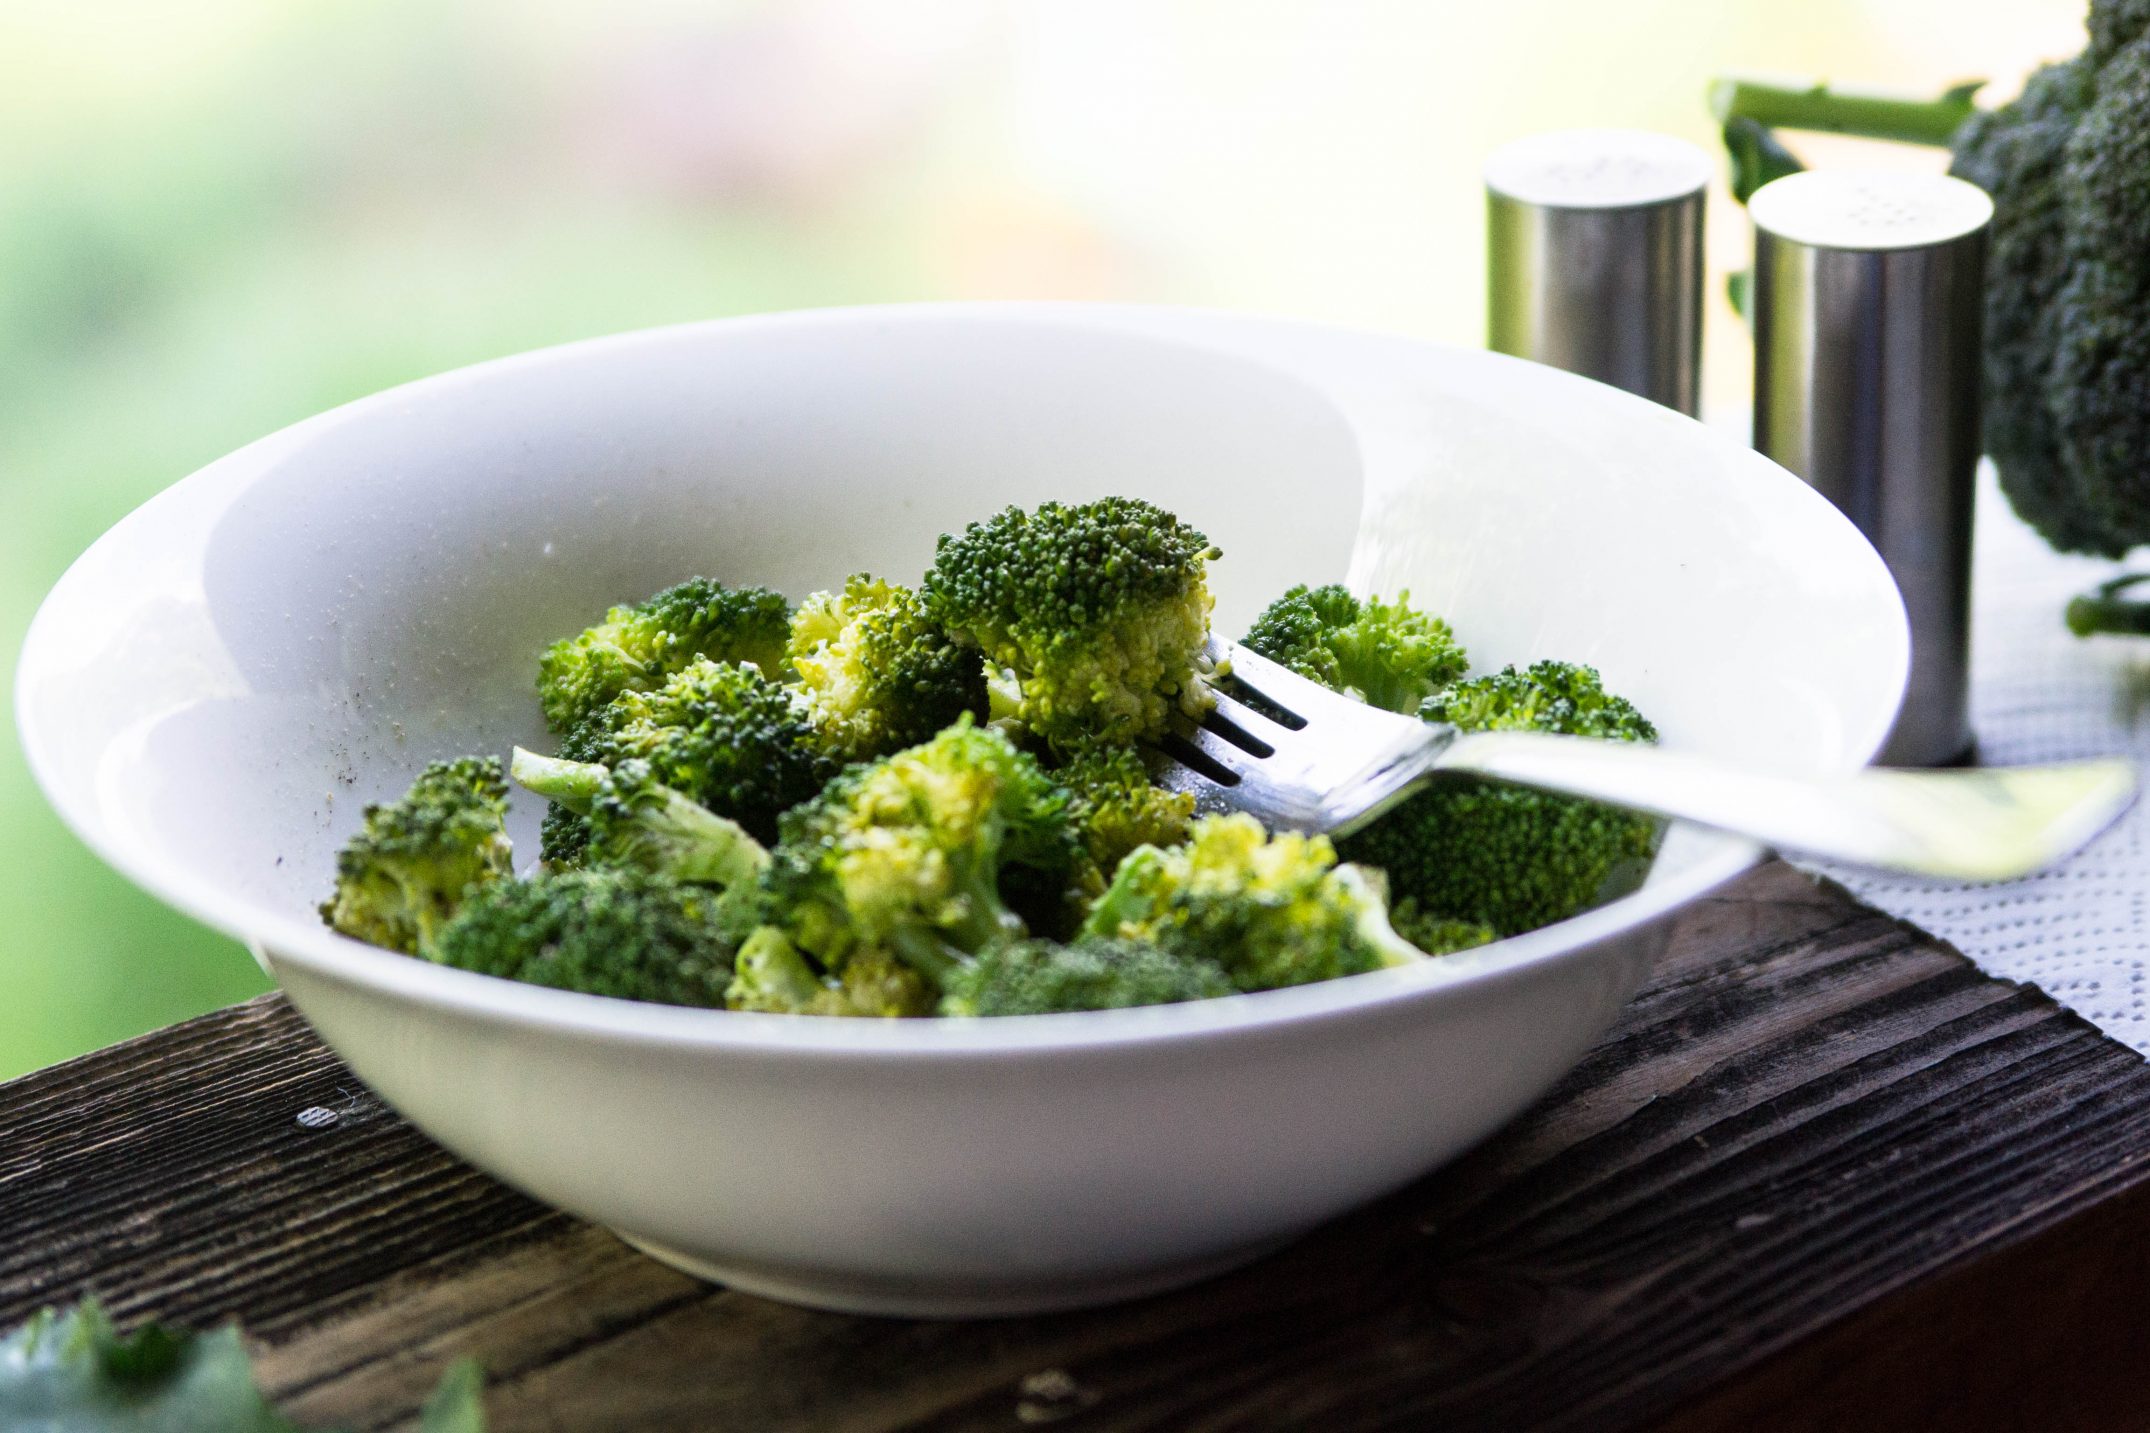 Broccolisalat, einfach